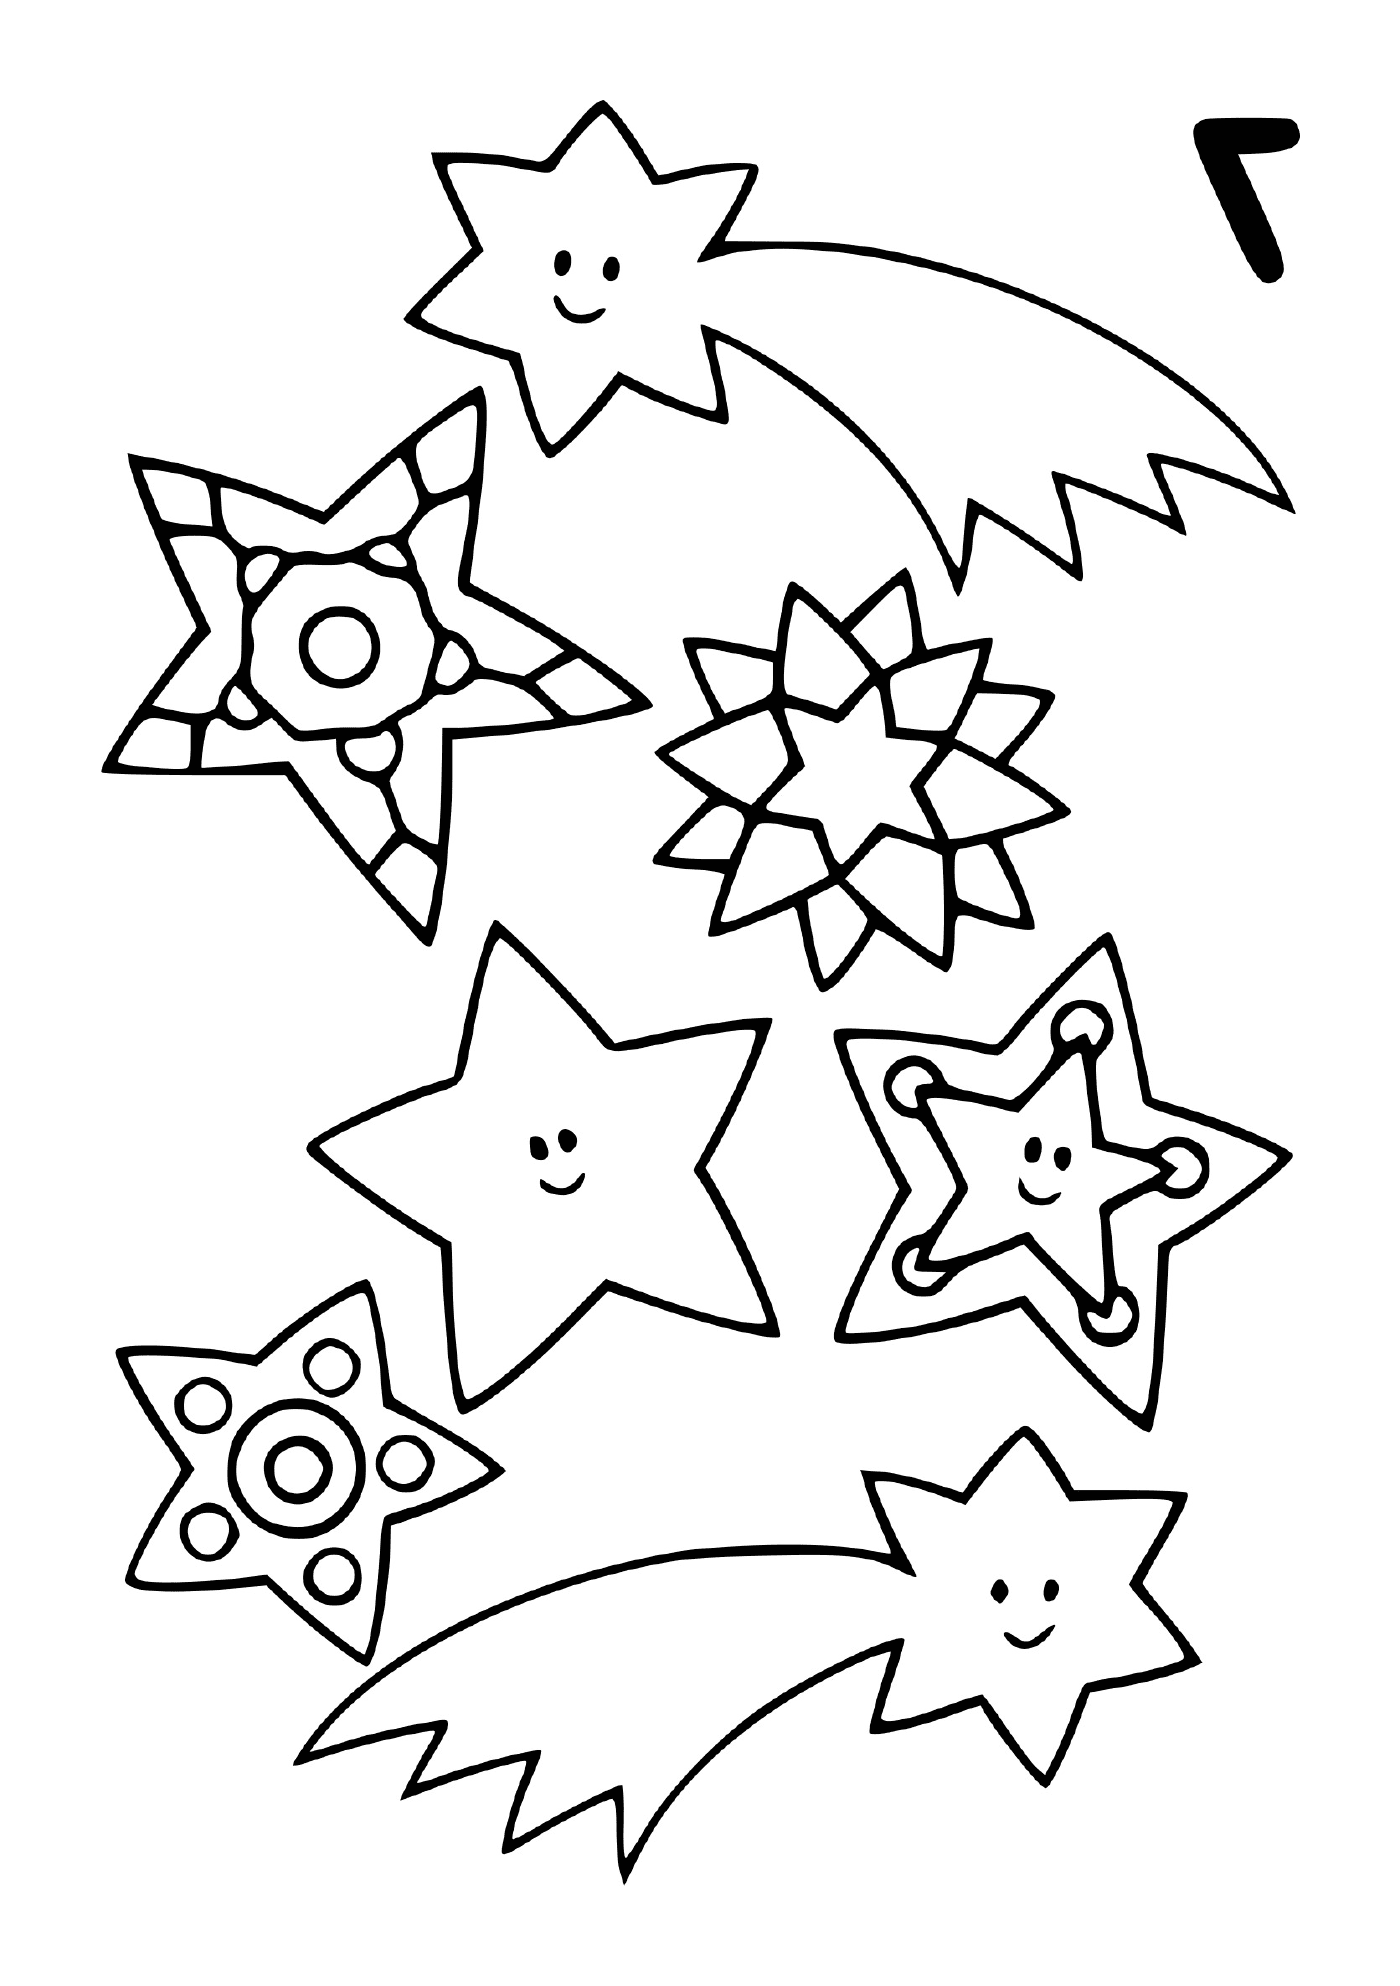  Um conjunto de estrelas cadentes em diferentes formas 